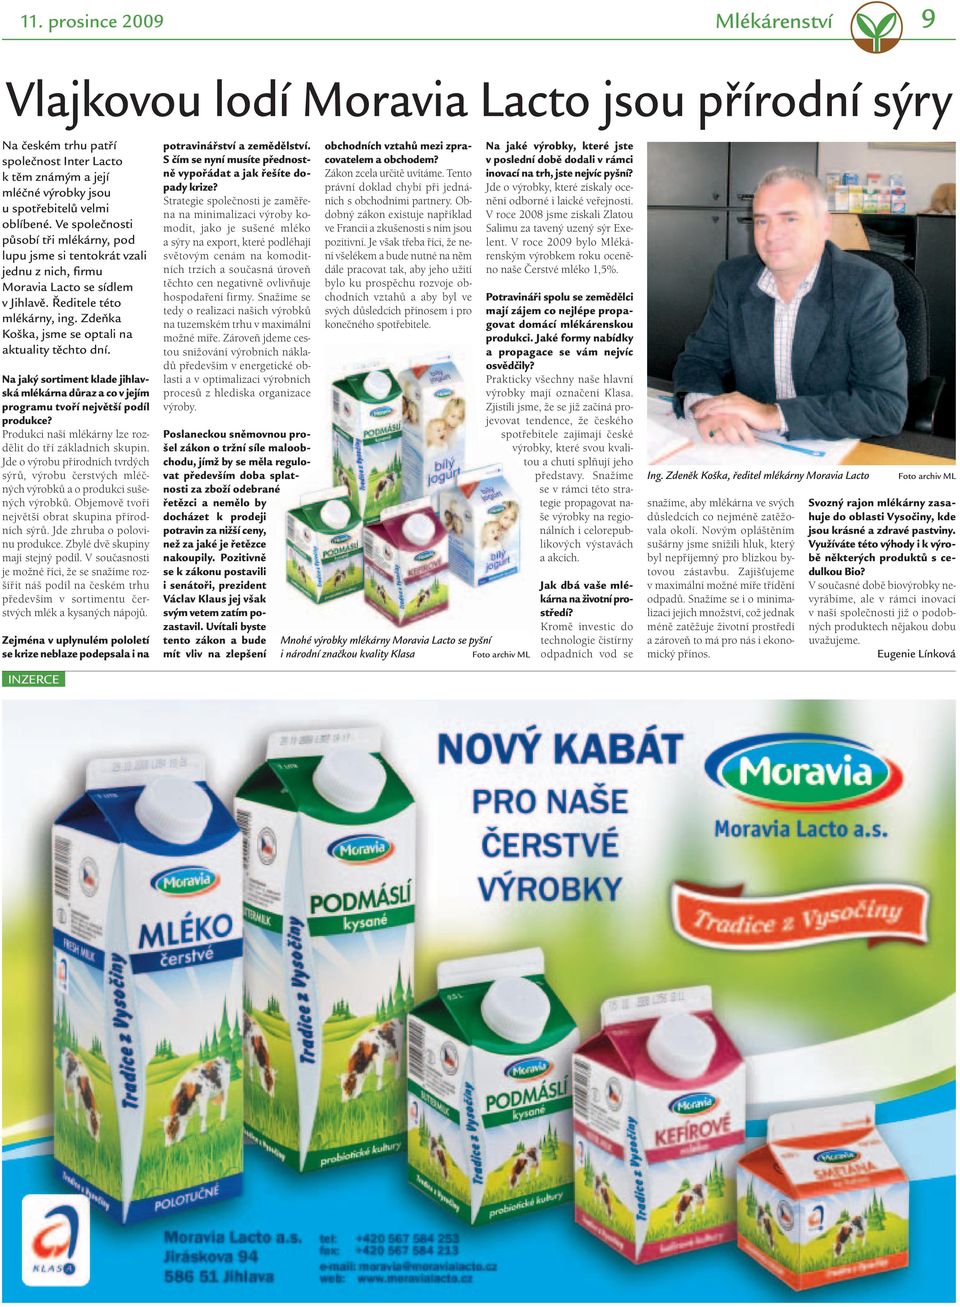 Zdeňka Koška, jsme se optali na aktuality těchto dní. Na jaký sortiment klade jihlavská mlékárna důraz a co v jejím programu tvoří největší podíl produkce?